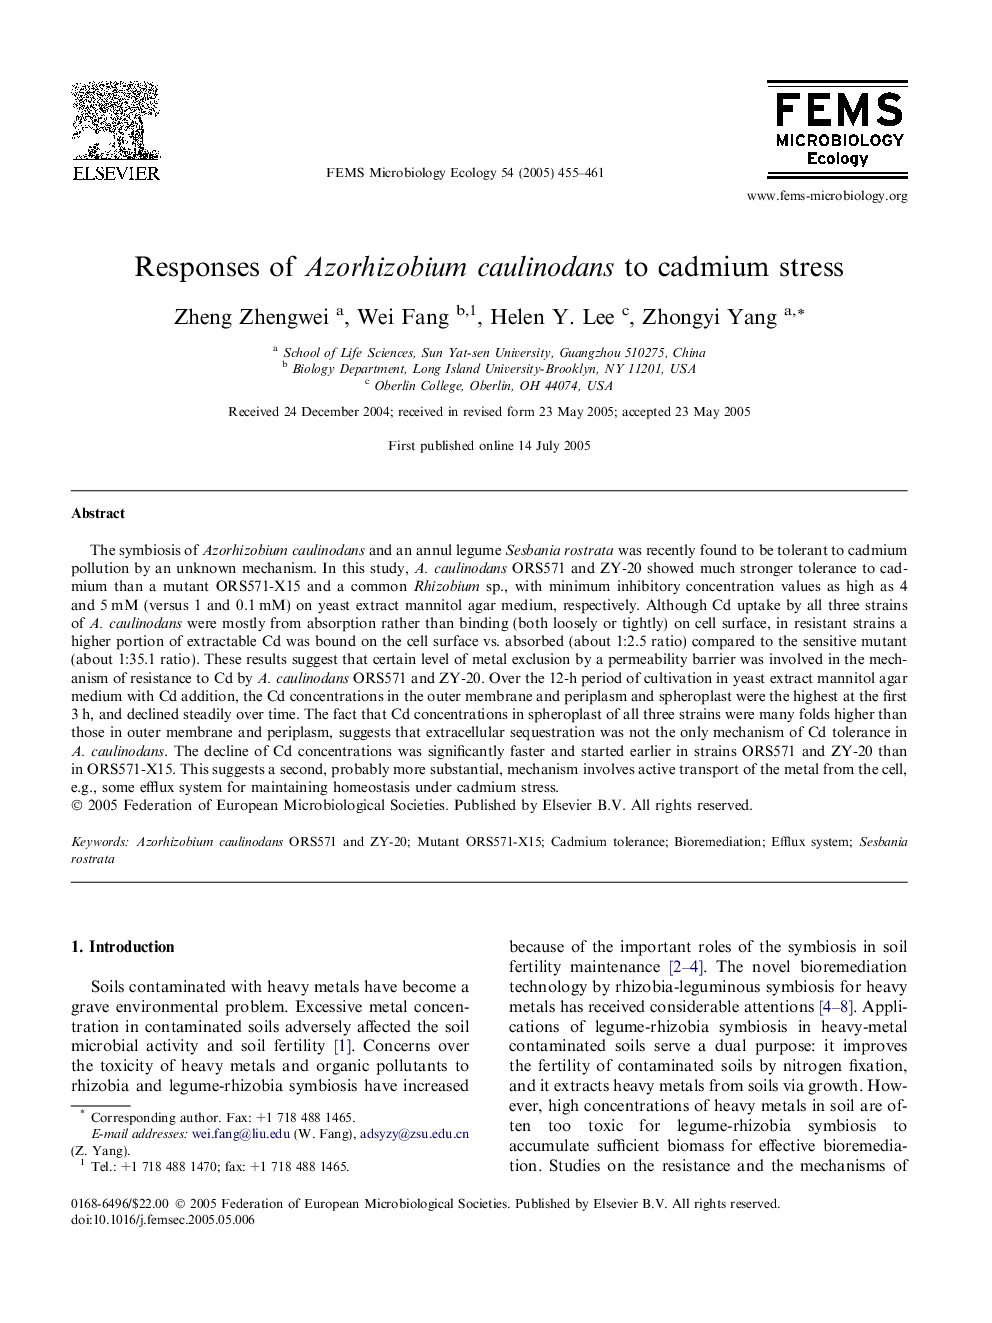 Responses of Azorhizobium caulinodans to cadmium stress